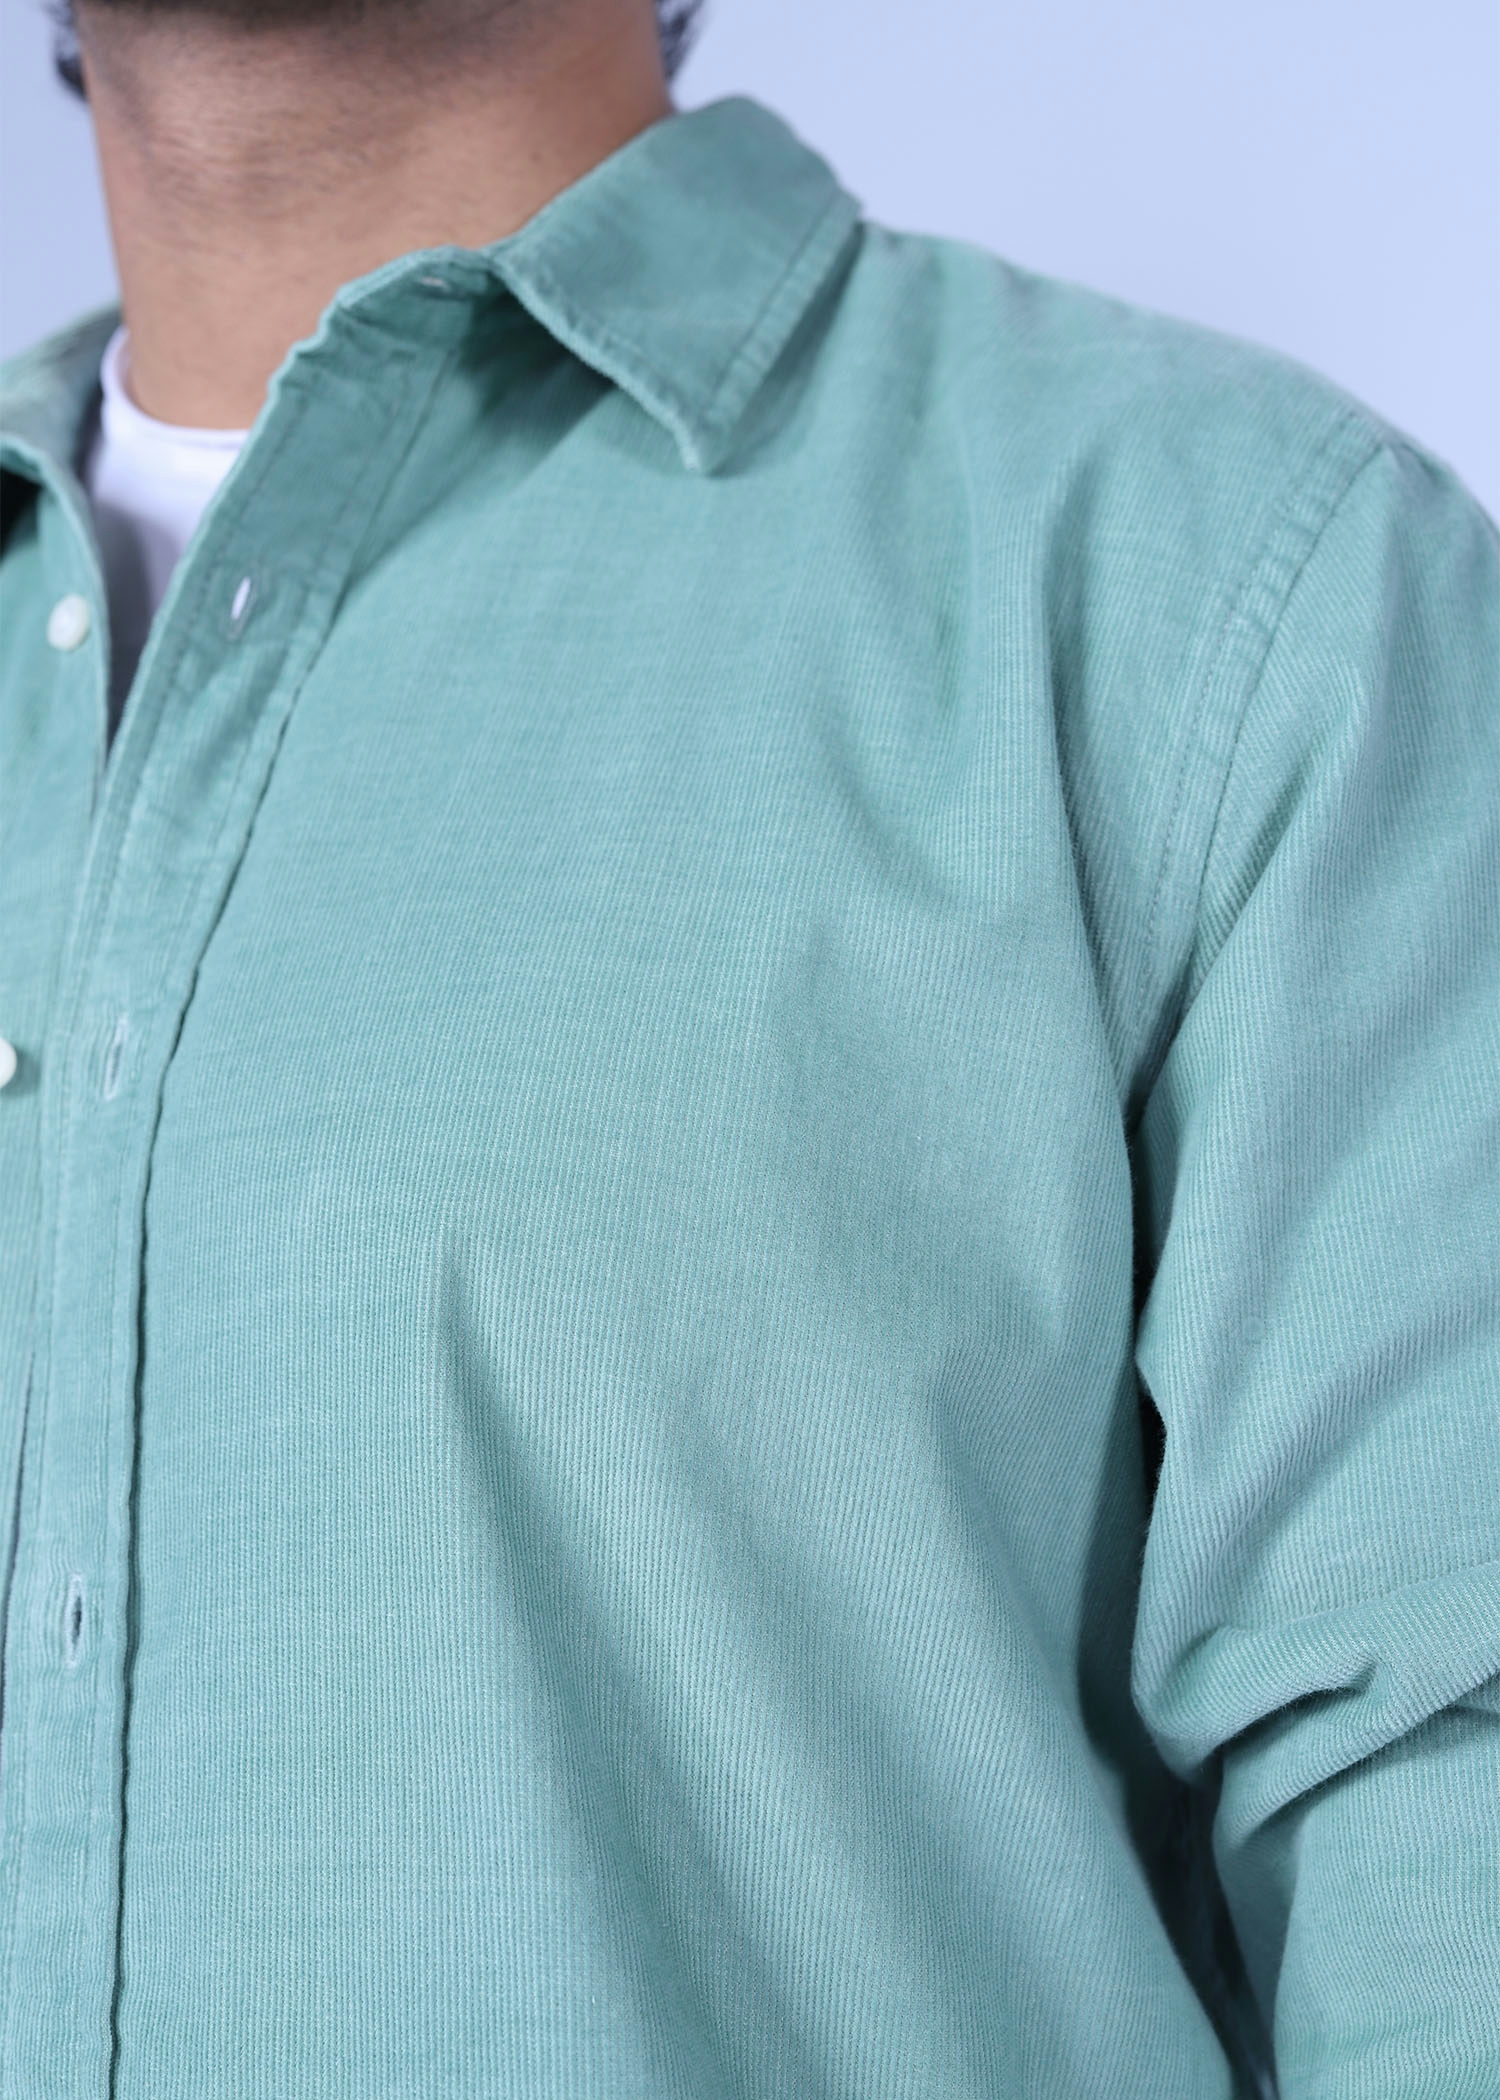 beijing i corduroy shirt paste color close front view